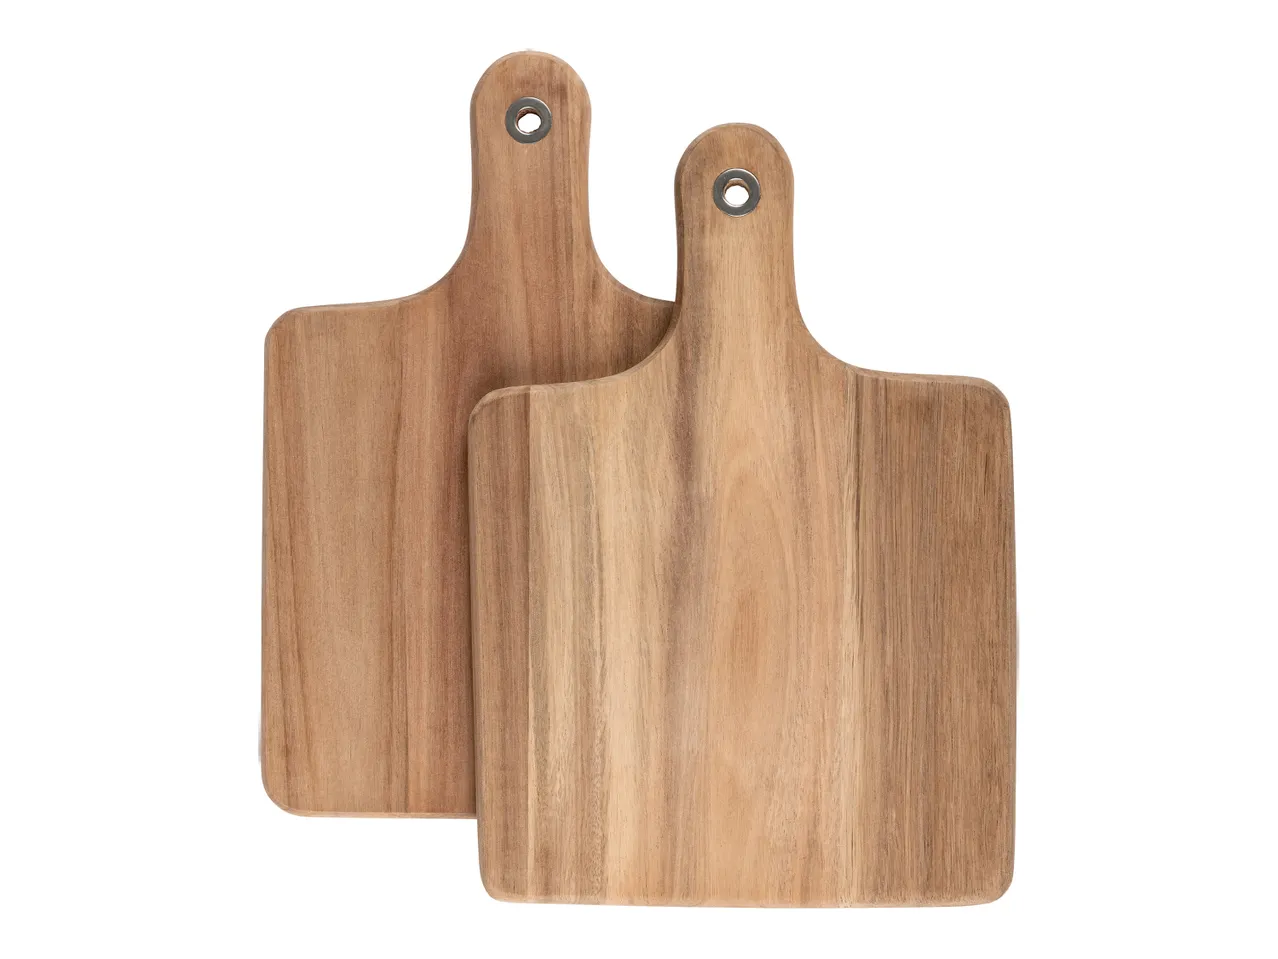 Tagliere da cucina , prezzo 8.99 EUR 
Tagliere da cucina 1 o 2 pezzi 
- In legno ...